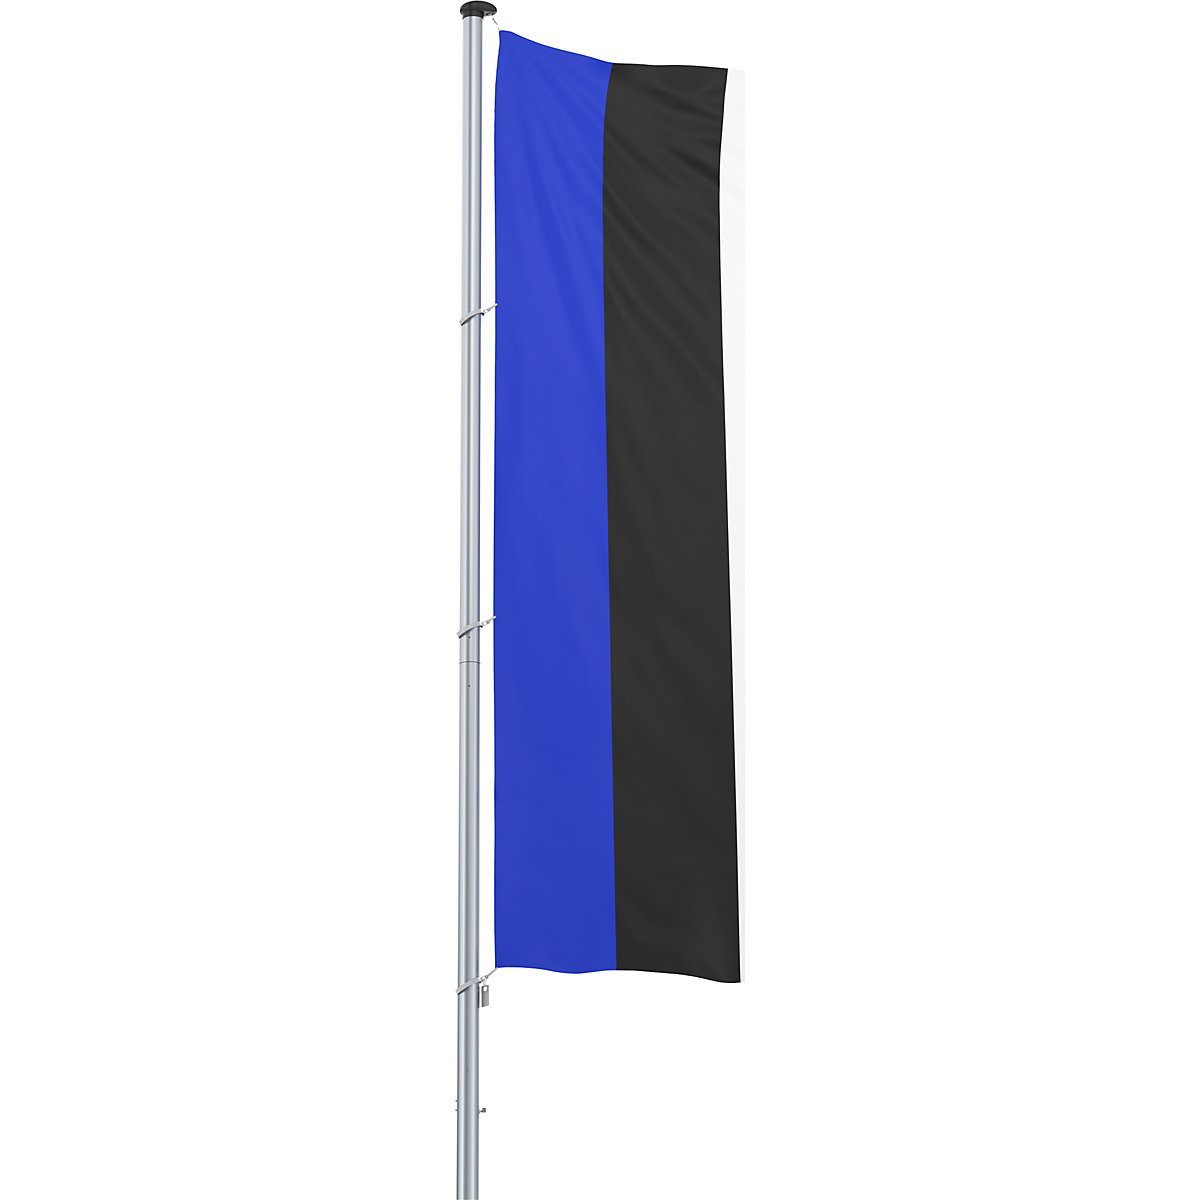 Bandiera/Bandiera nazionale – Mannus, formato 1,2 x 3 m, Estonia-19